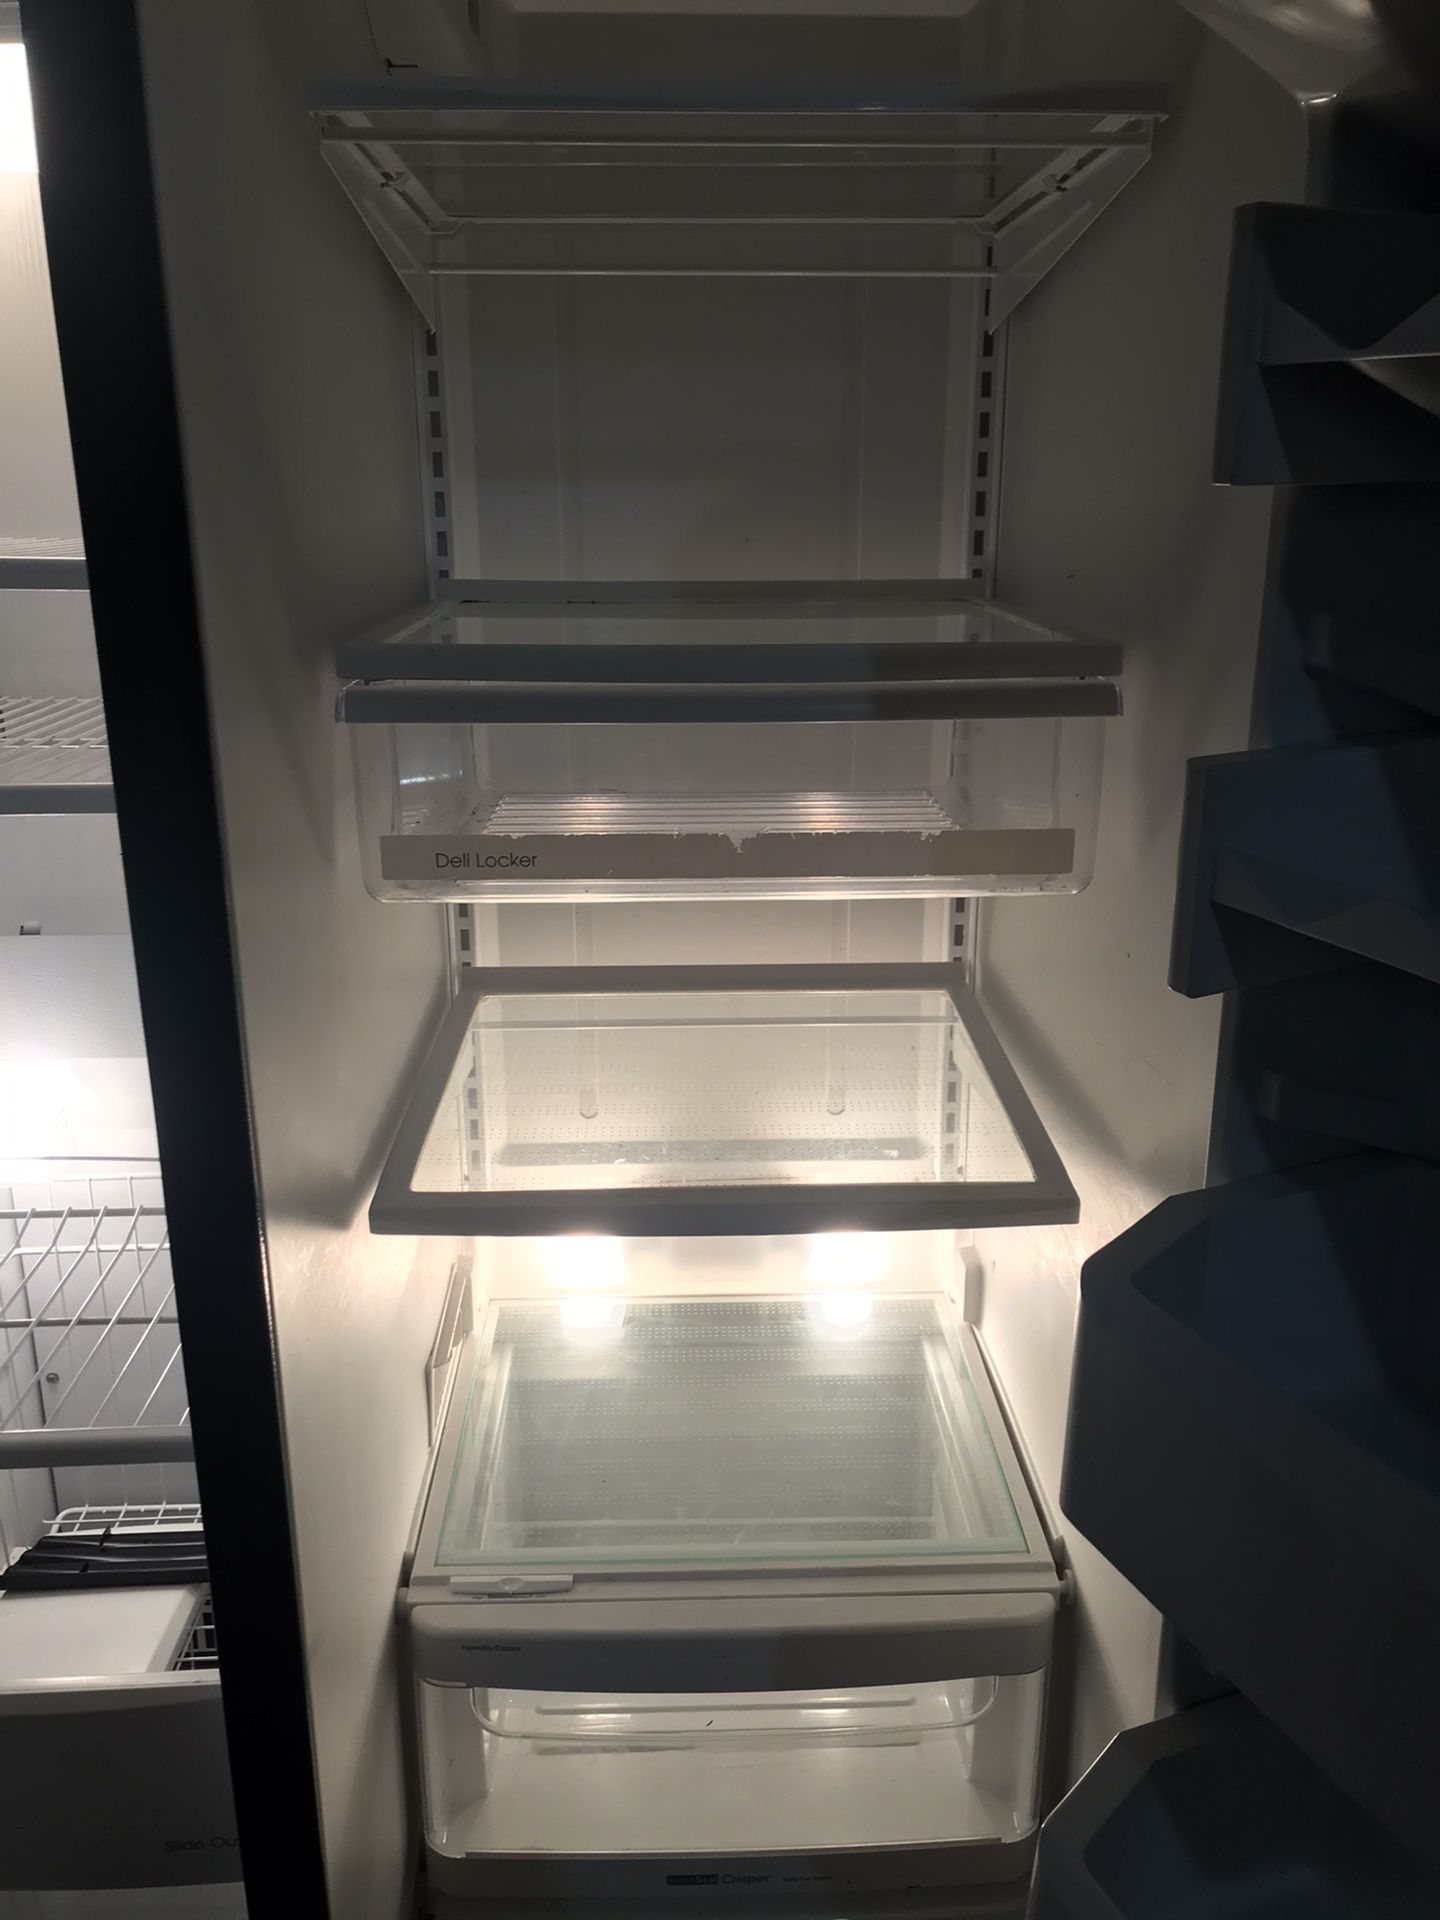 Kitchen aid stainless steel refrigerator